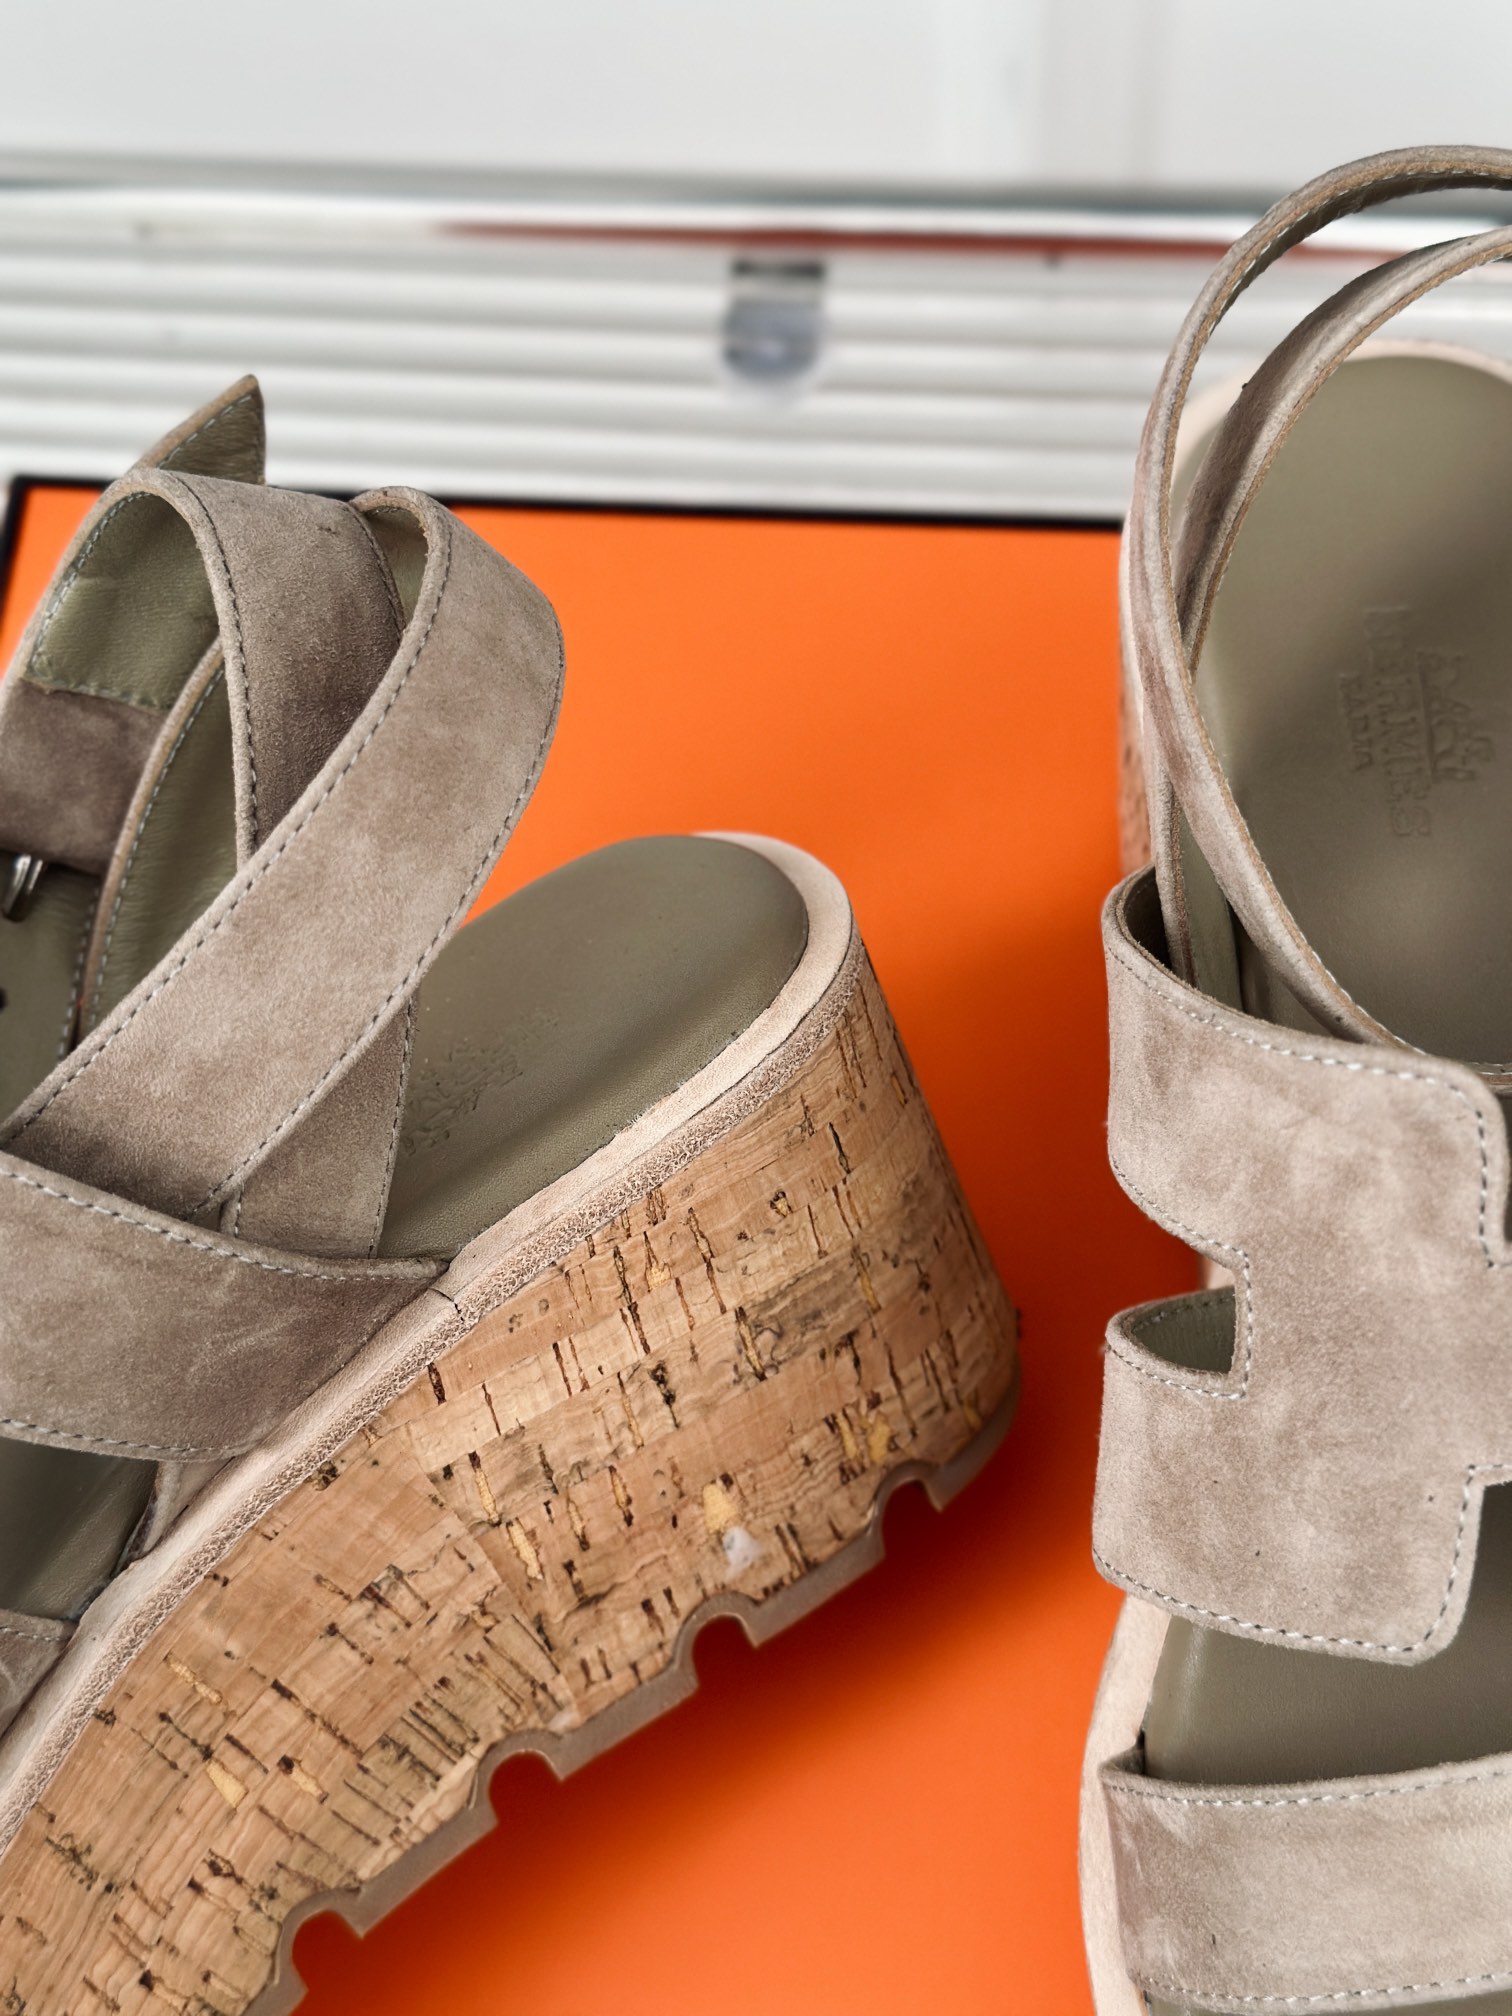 Hermès/爱马仕经典H厚底凉鞋依旧是永恒经典的H造型极约复古的设计浓厚的异域风情厚底在拉长腿方面真的